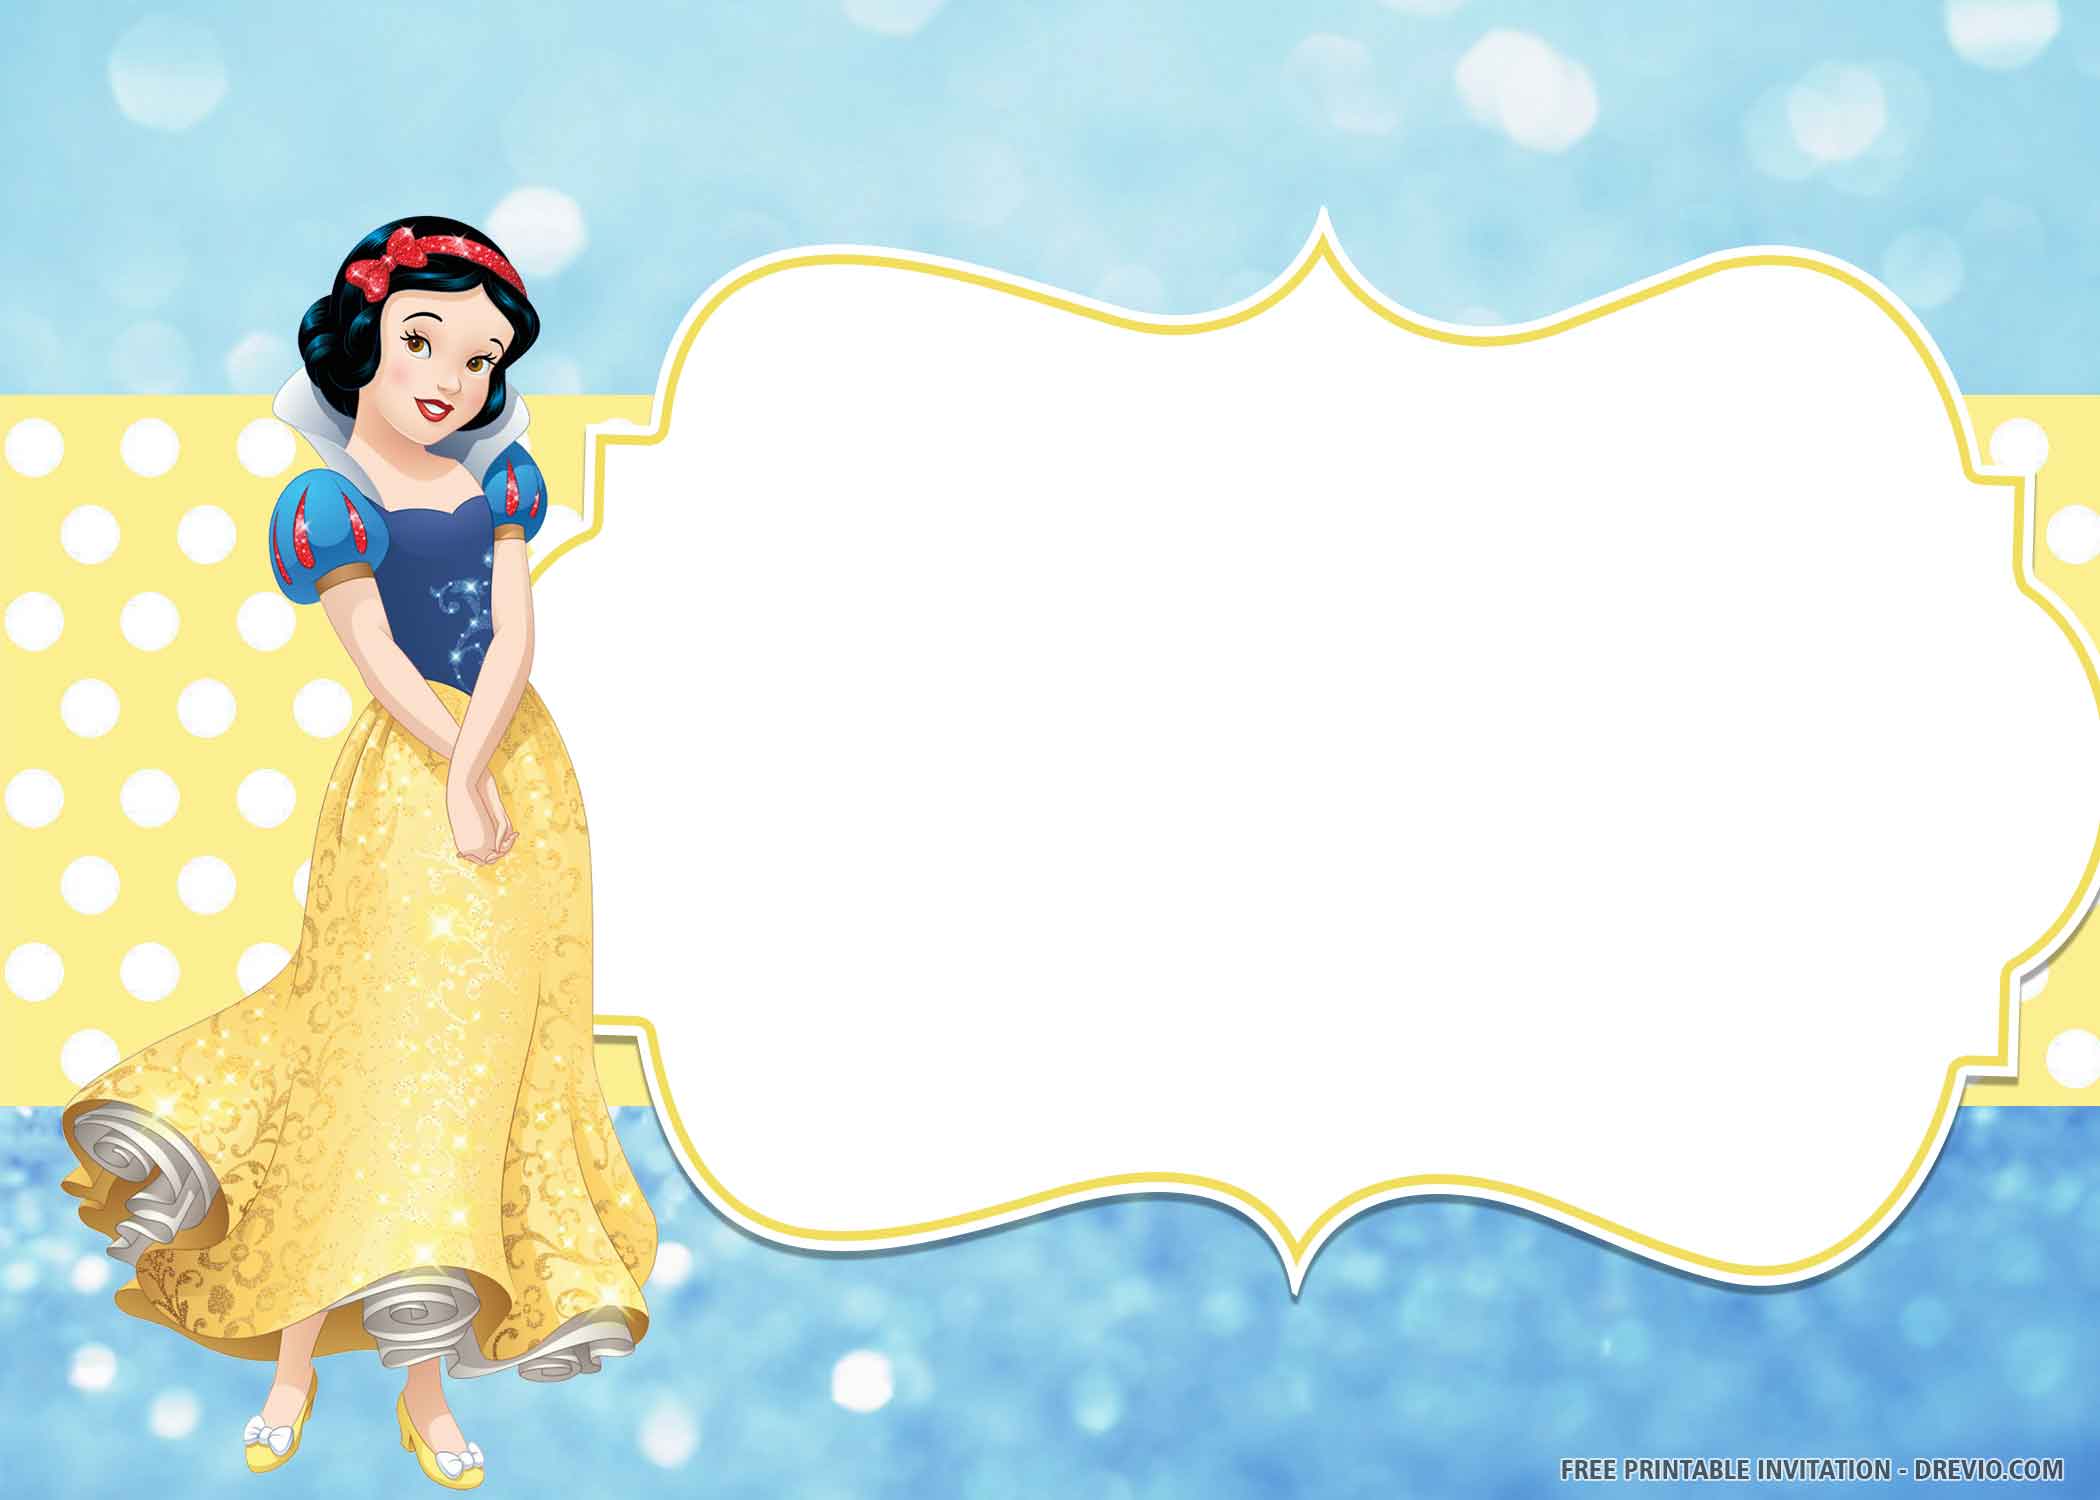 Bạn đang tìm kiếm một bức ảnh lưu niệm tuyệt vời cho sinh nhật của bé gái bạn? Đừng bỏ qua bức ảnh nền hoàng tử phù thủy với bối cảnh của công chúa tuyết Snow White. Một bức ảnh đầy phù hợp với chủ đề và mang đậm phong cách Disney.